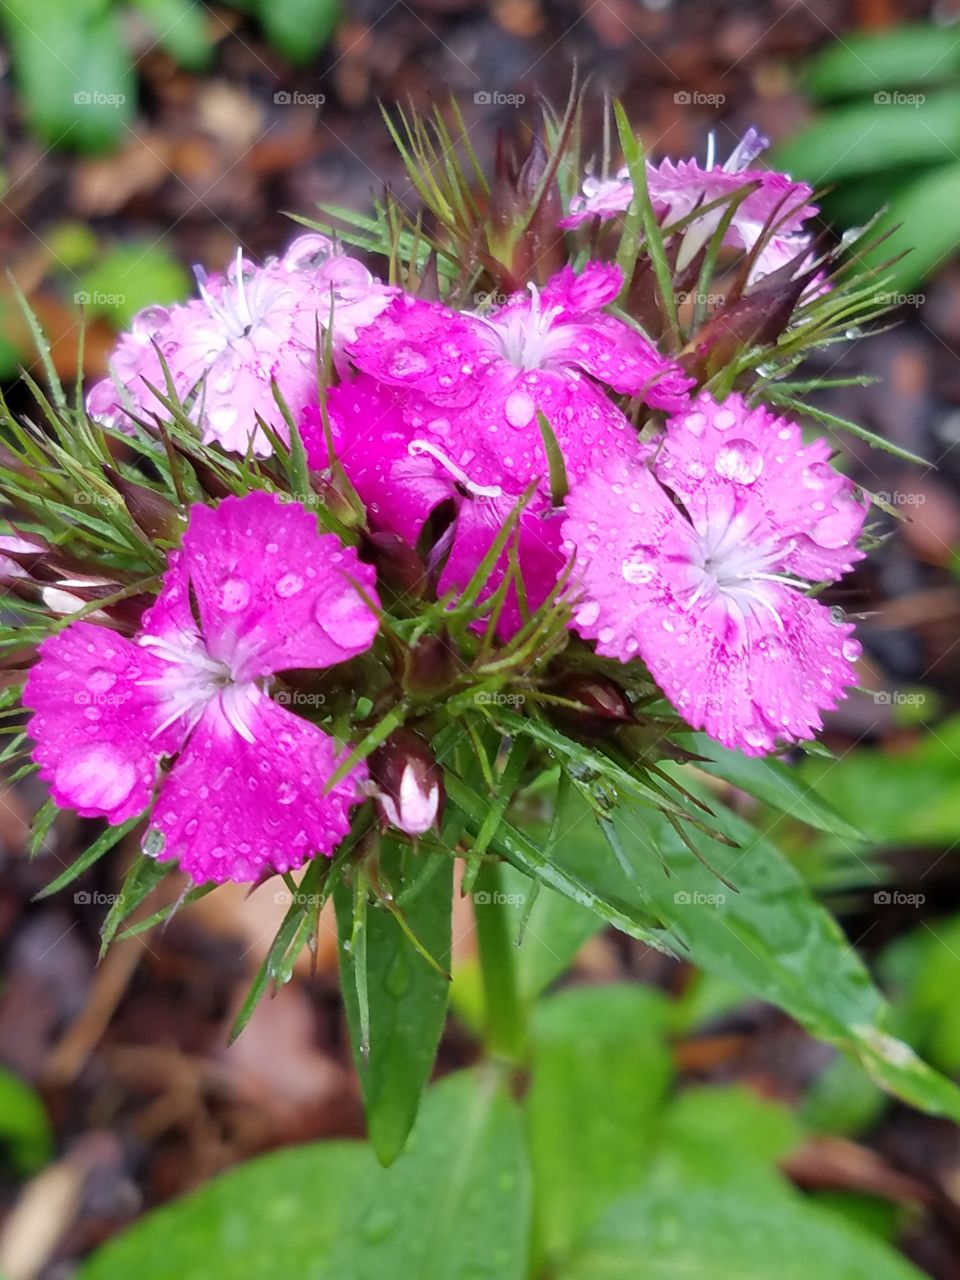 raindrops on flowers